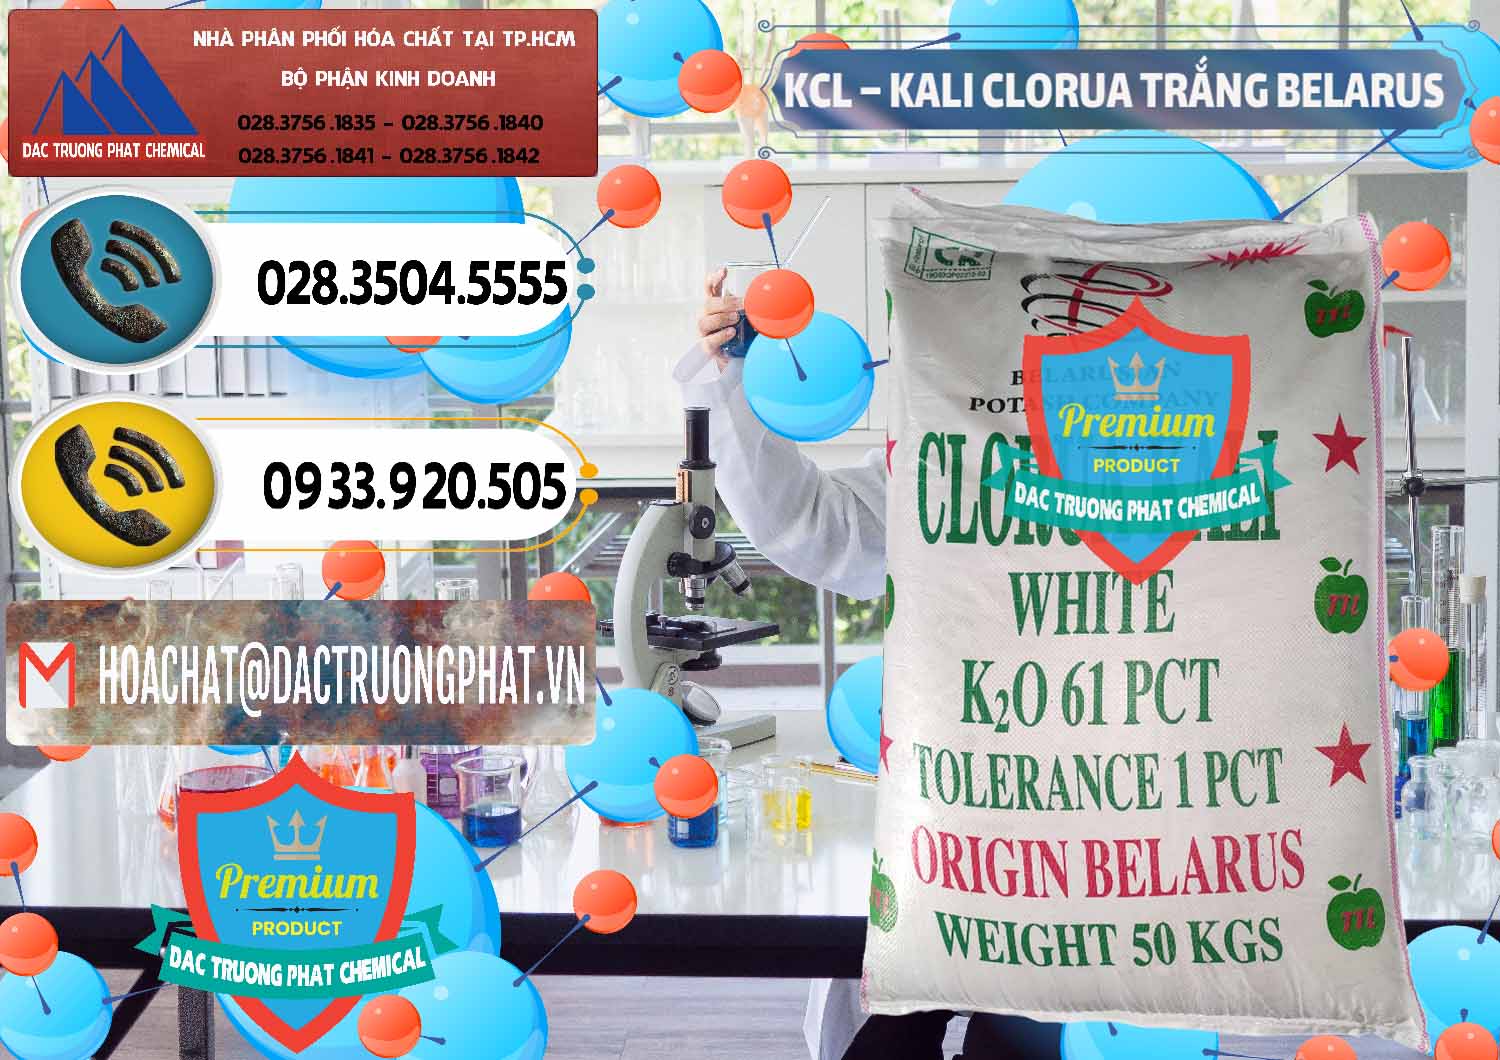 Nơi kinh doanh _ bán KCL – Kali Clorua Trắng Belarus - 0085 - Nhà phân phối và bán hóa chất tại TP.HCM - hoachatdetnhuom.vn